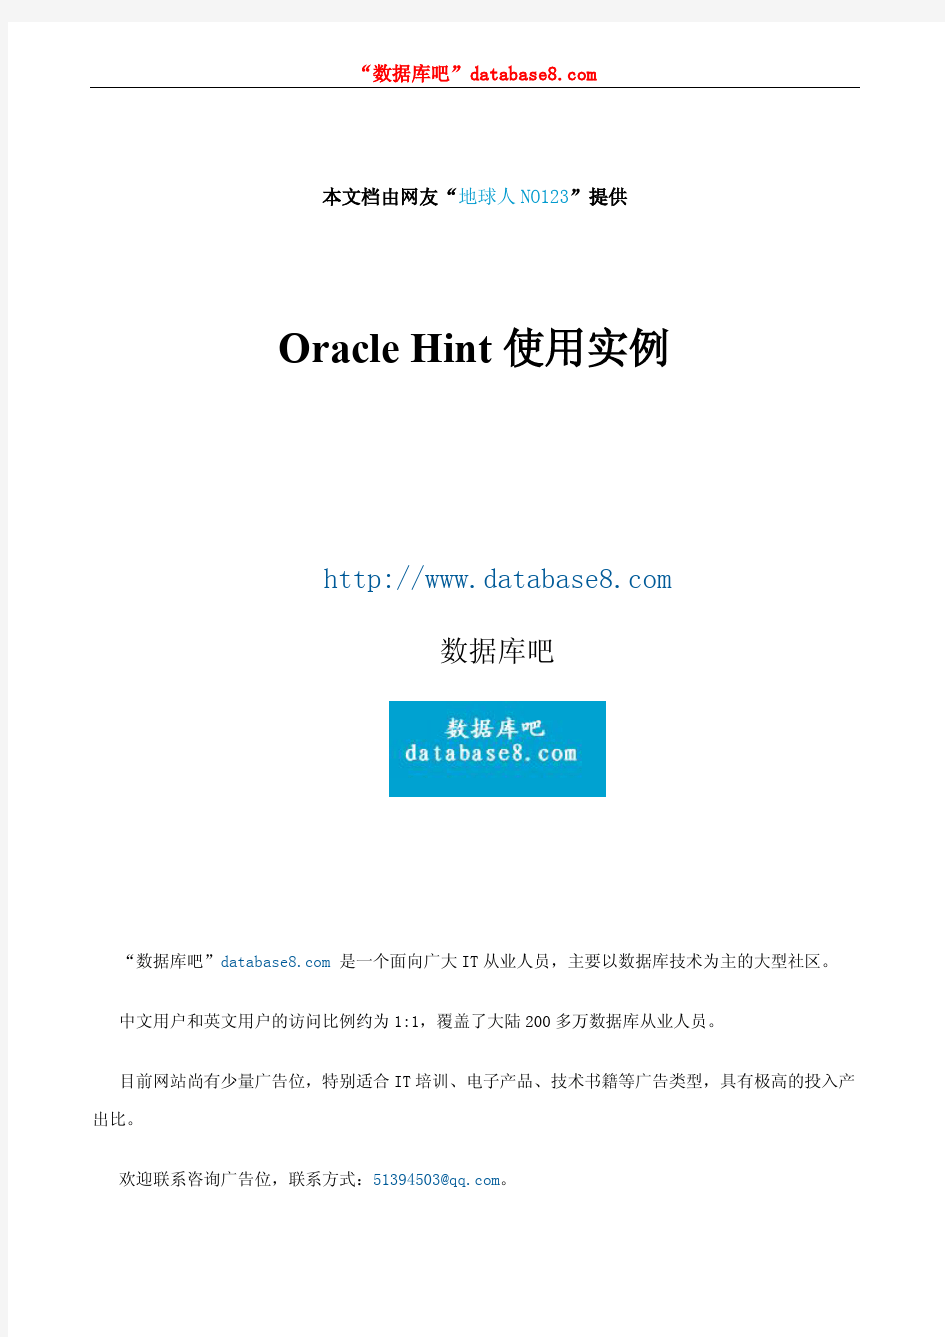 Oracle Hint使用实例